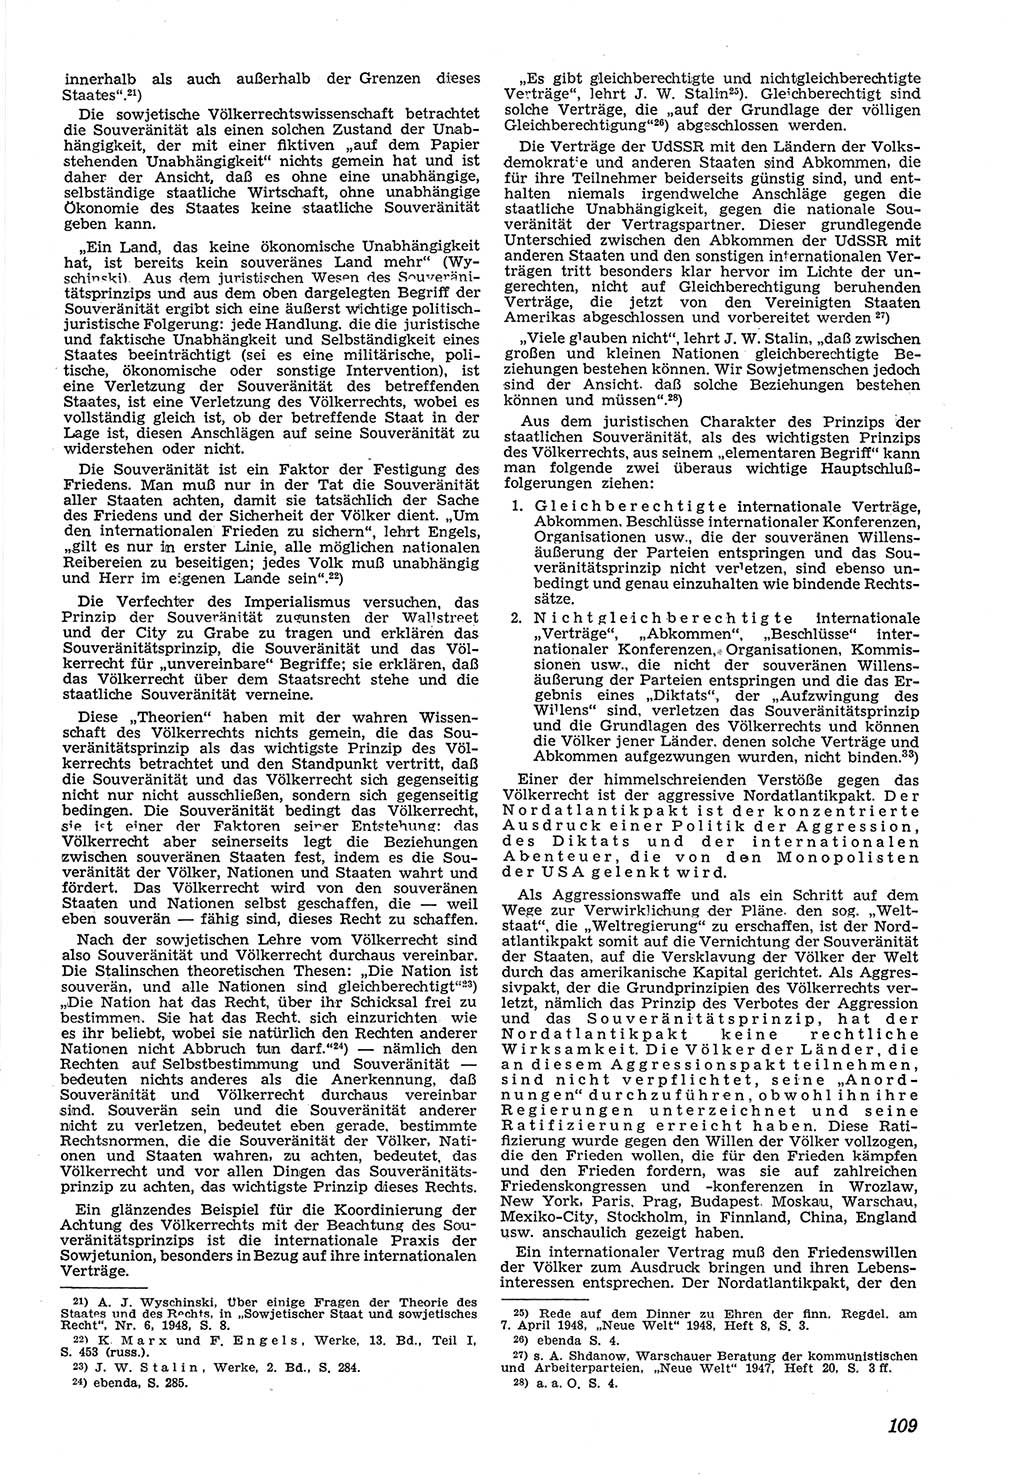 Neue Justiz (NJ), Zeitschrift für Recht und Rechtswissenschaft [Deutsche Demokratische Republik (DDR)], 5. Jahrgang 1951, Seite 109 (NJ DDR 1951, S. 109)